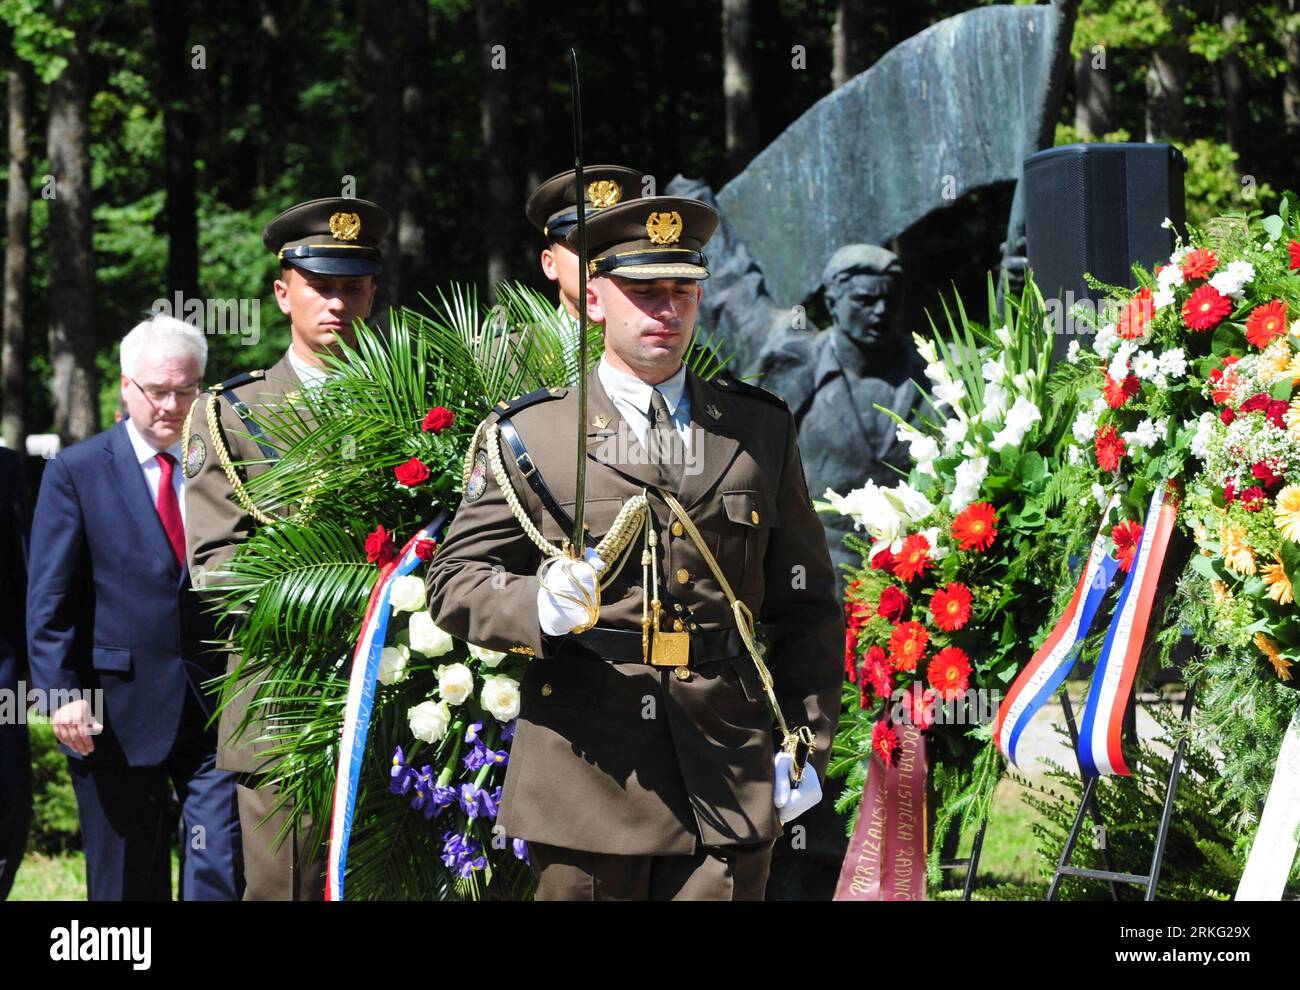 Bildnummer: 55535121 Datum: 22.06.2011 Copyright: imago/Xinhua (110622) -- SISAK, 22 giugno 2011 (Xinhua) -- i soldati croati partecipano a una cerimonia commemorativa vicino al monumento eretto in omaggio alla prima unità partigiana di 79 uomini nella foresta di Brezovica vicino a Sisak, Croazia, 22 giugno 2011. La commemorazione principale che ha visto la giornata della lotta anti-fascista della Croazia segna il 70° anniversario della fondazione della prima unità armata antifascista in Croazia. La prima brigata partigiana fu formata nella foresta croata di Brezovica il 22 giugno 1941. (Xinhua/Miso Lisanin) (msq) CROAZIA-GIORNATA DI LOTTA ANTI-FASCISTA-COMME Foto Stock